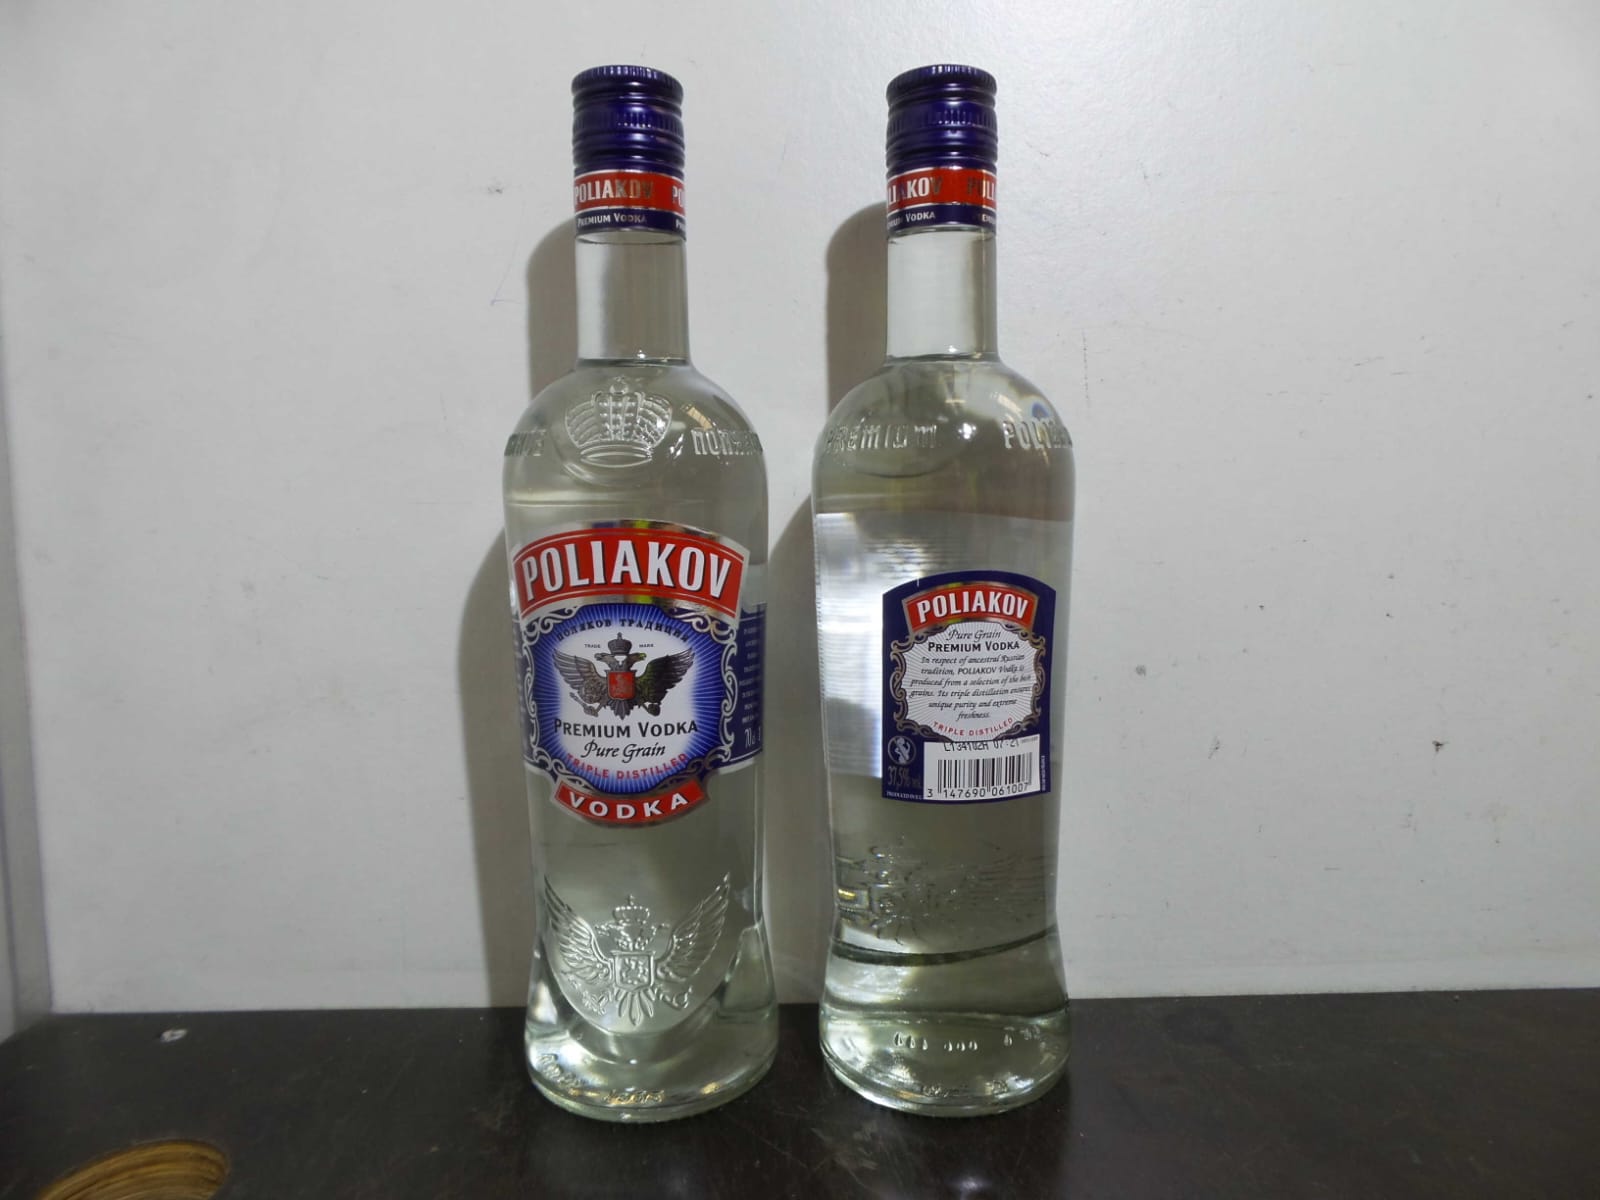 vodka Poliakov + photo